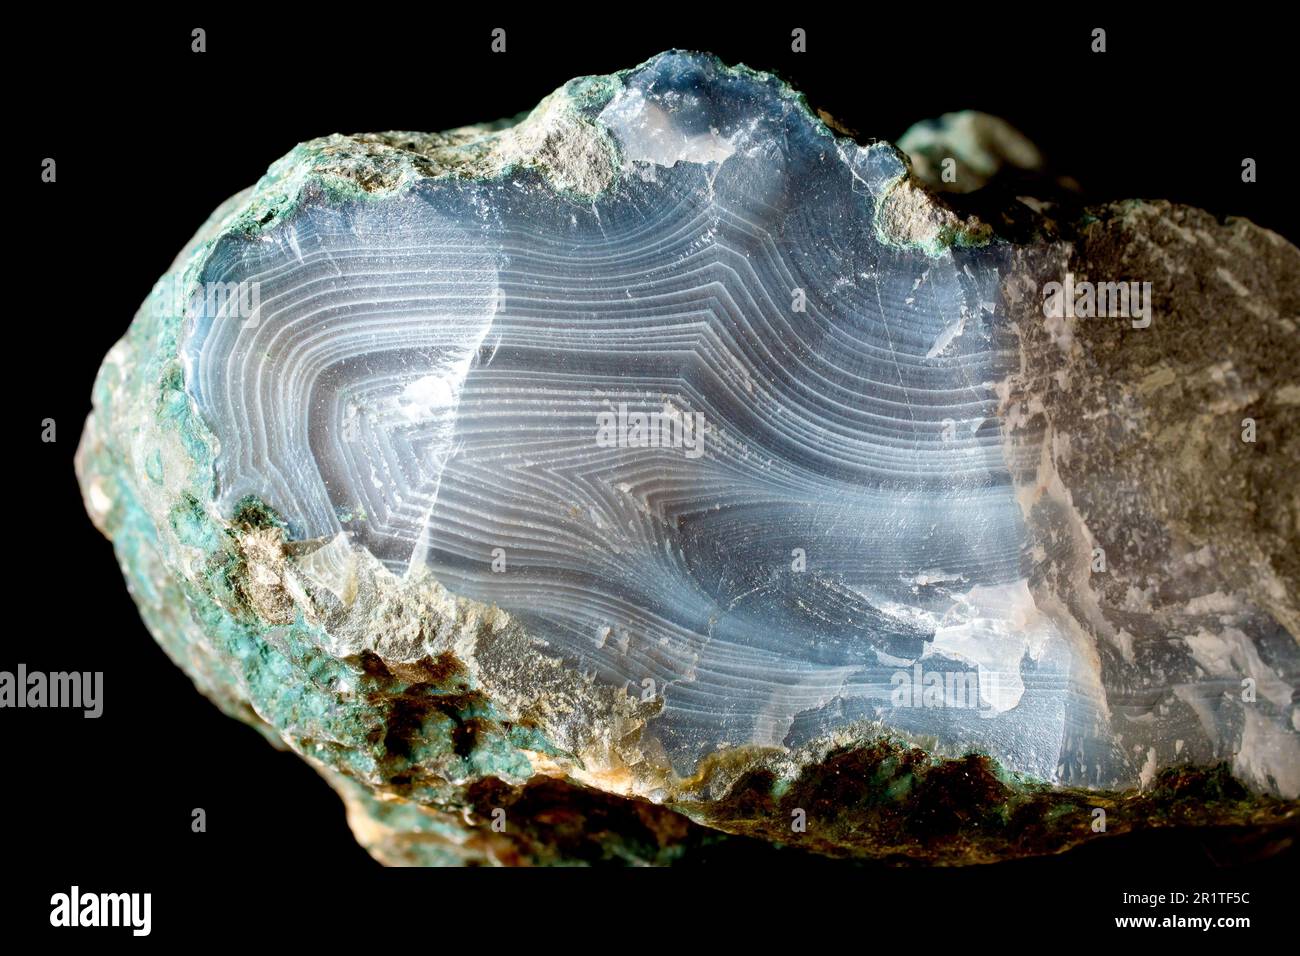 Nahaufnahme eines großen Achatsteins, eines verbandelten, variegierten Halbwertvorkommens des Silikat-Mineral-Chalcedons. Stockfoto